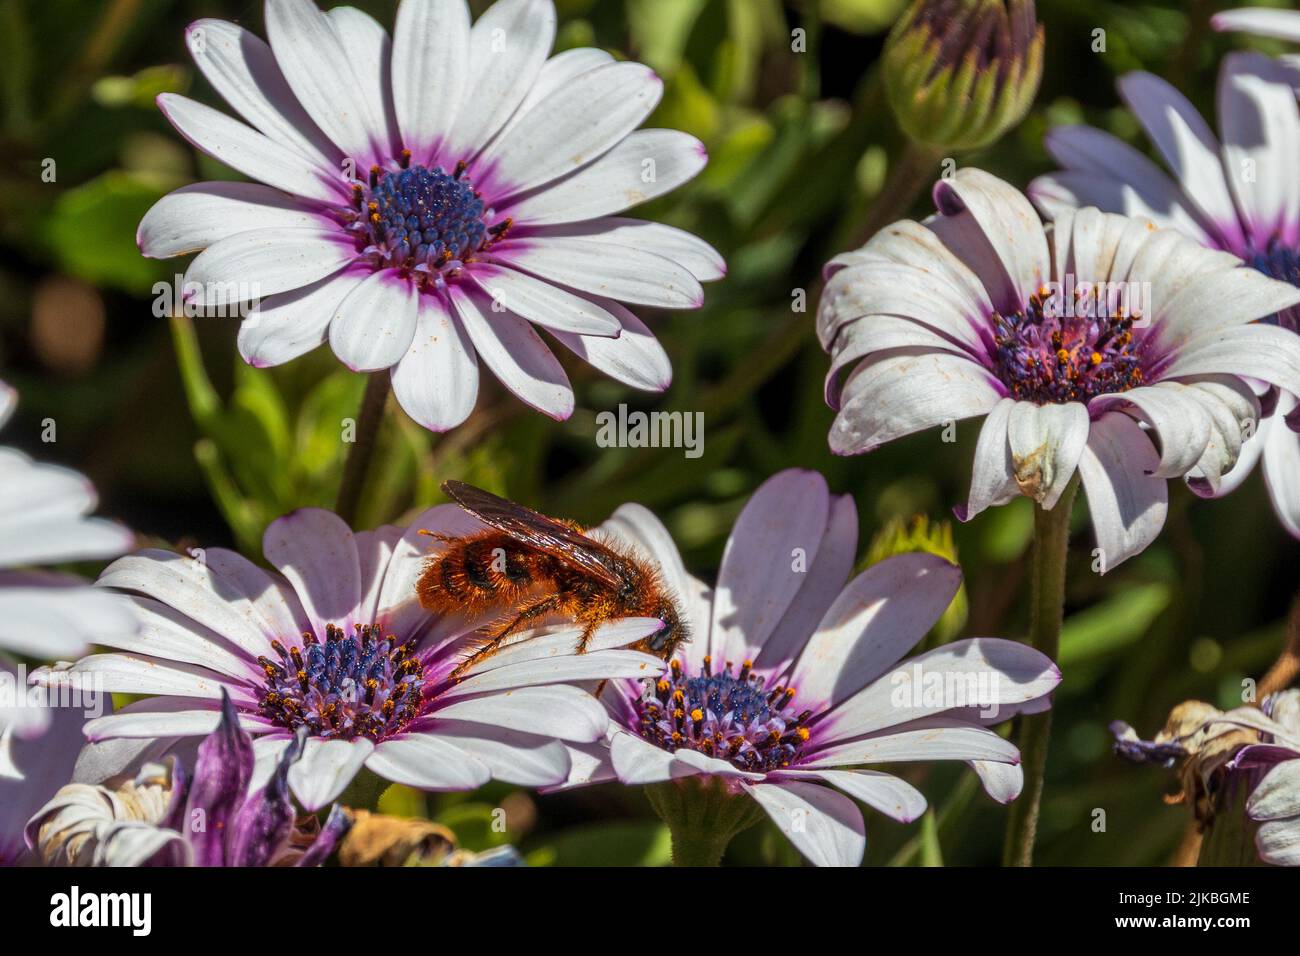 Dasyscolia ciliata, Scoliid wasp on a Daisy Flower Stock Photo